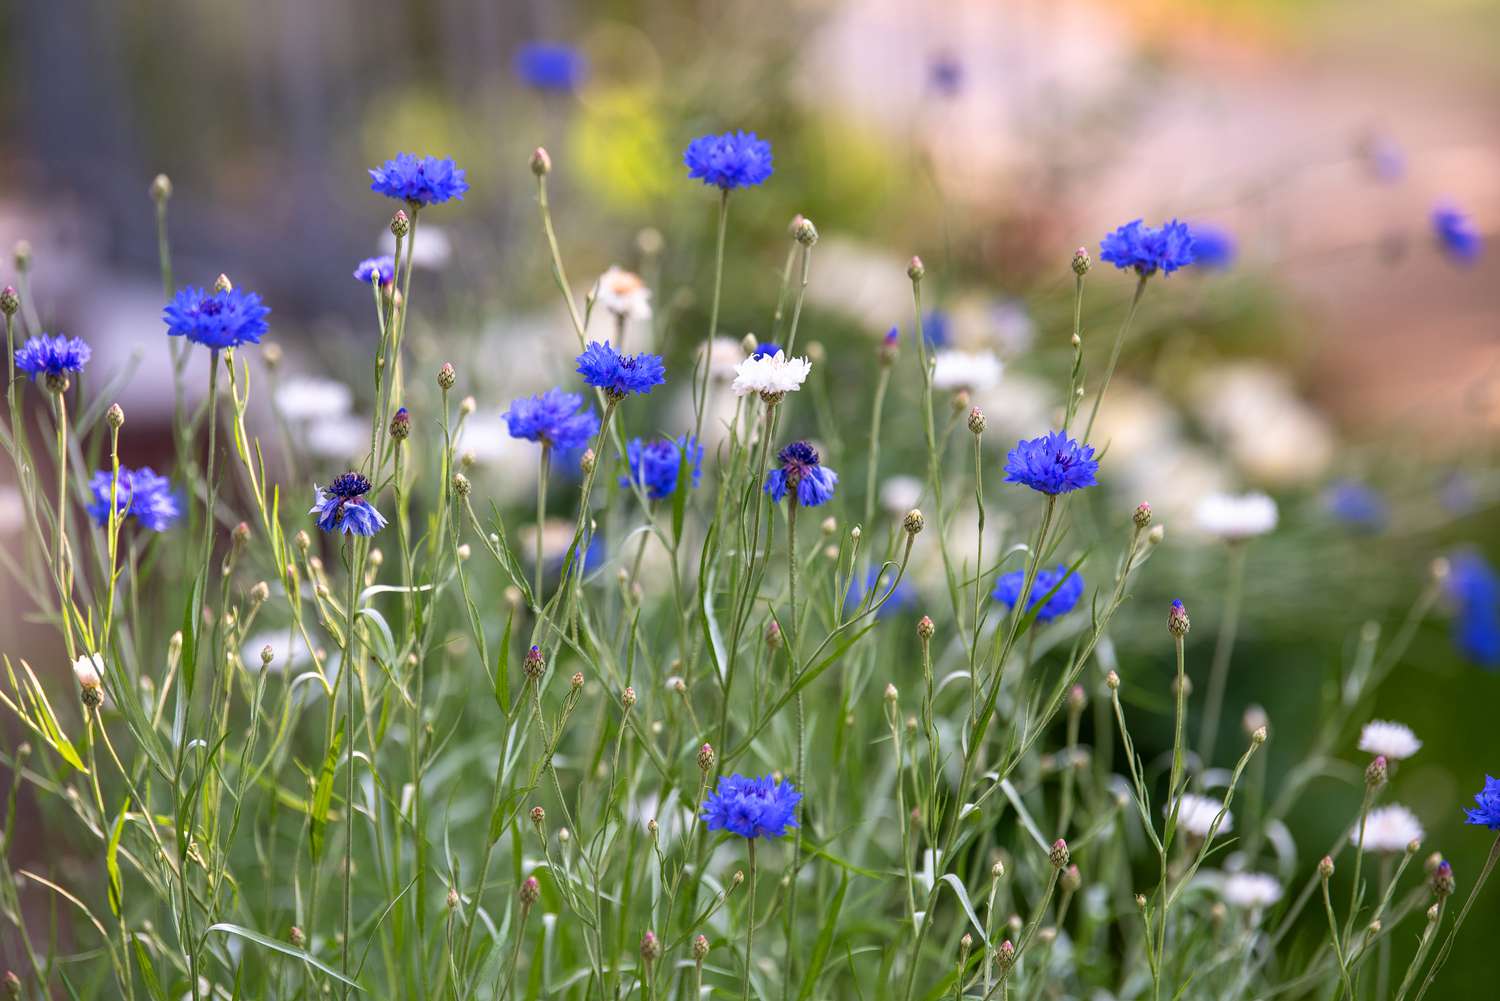 Botones de soltero arbusto de flores silvestres con pequeñas flores de color azul intenso y capullos